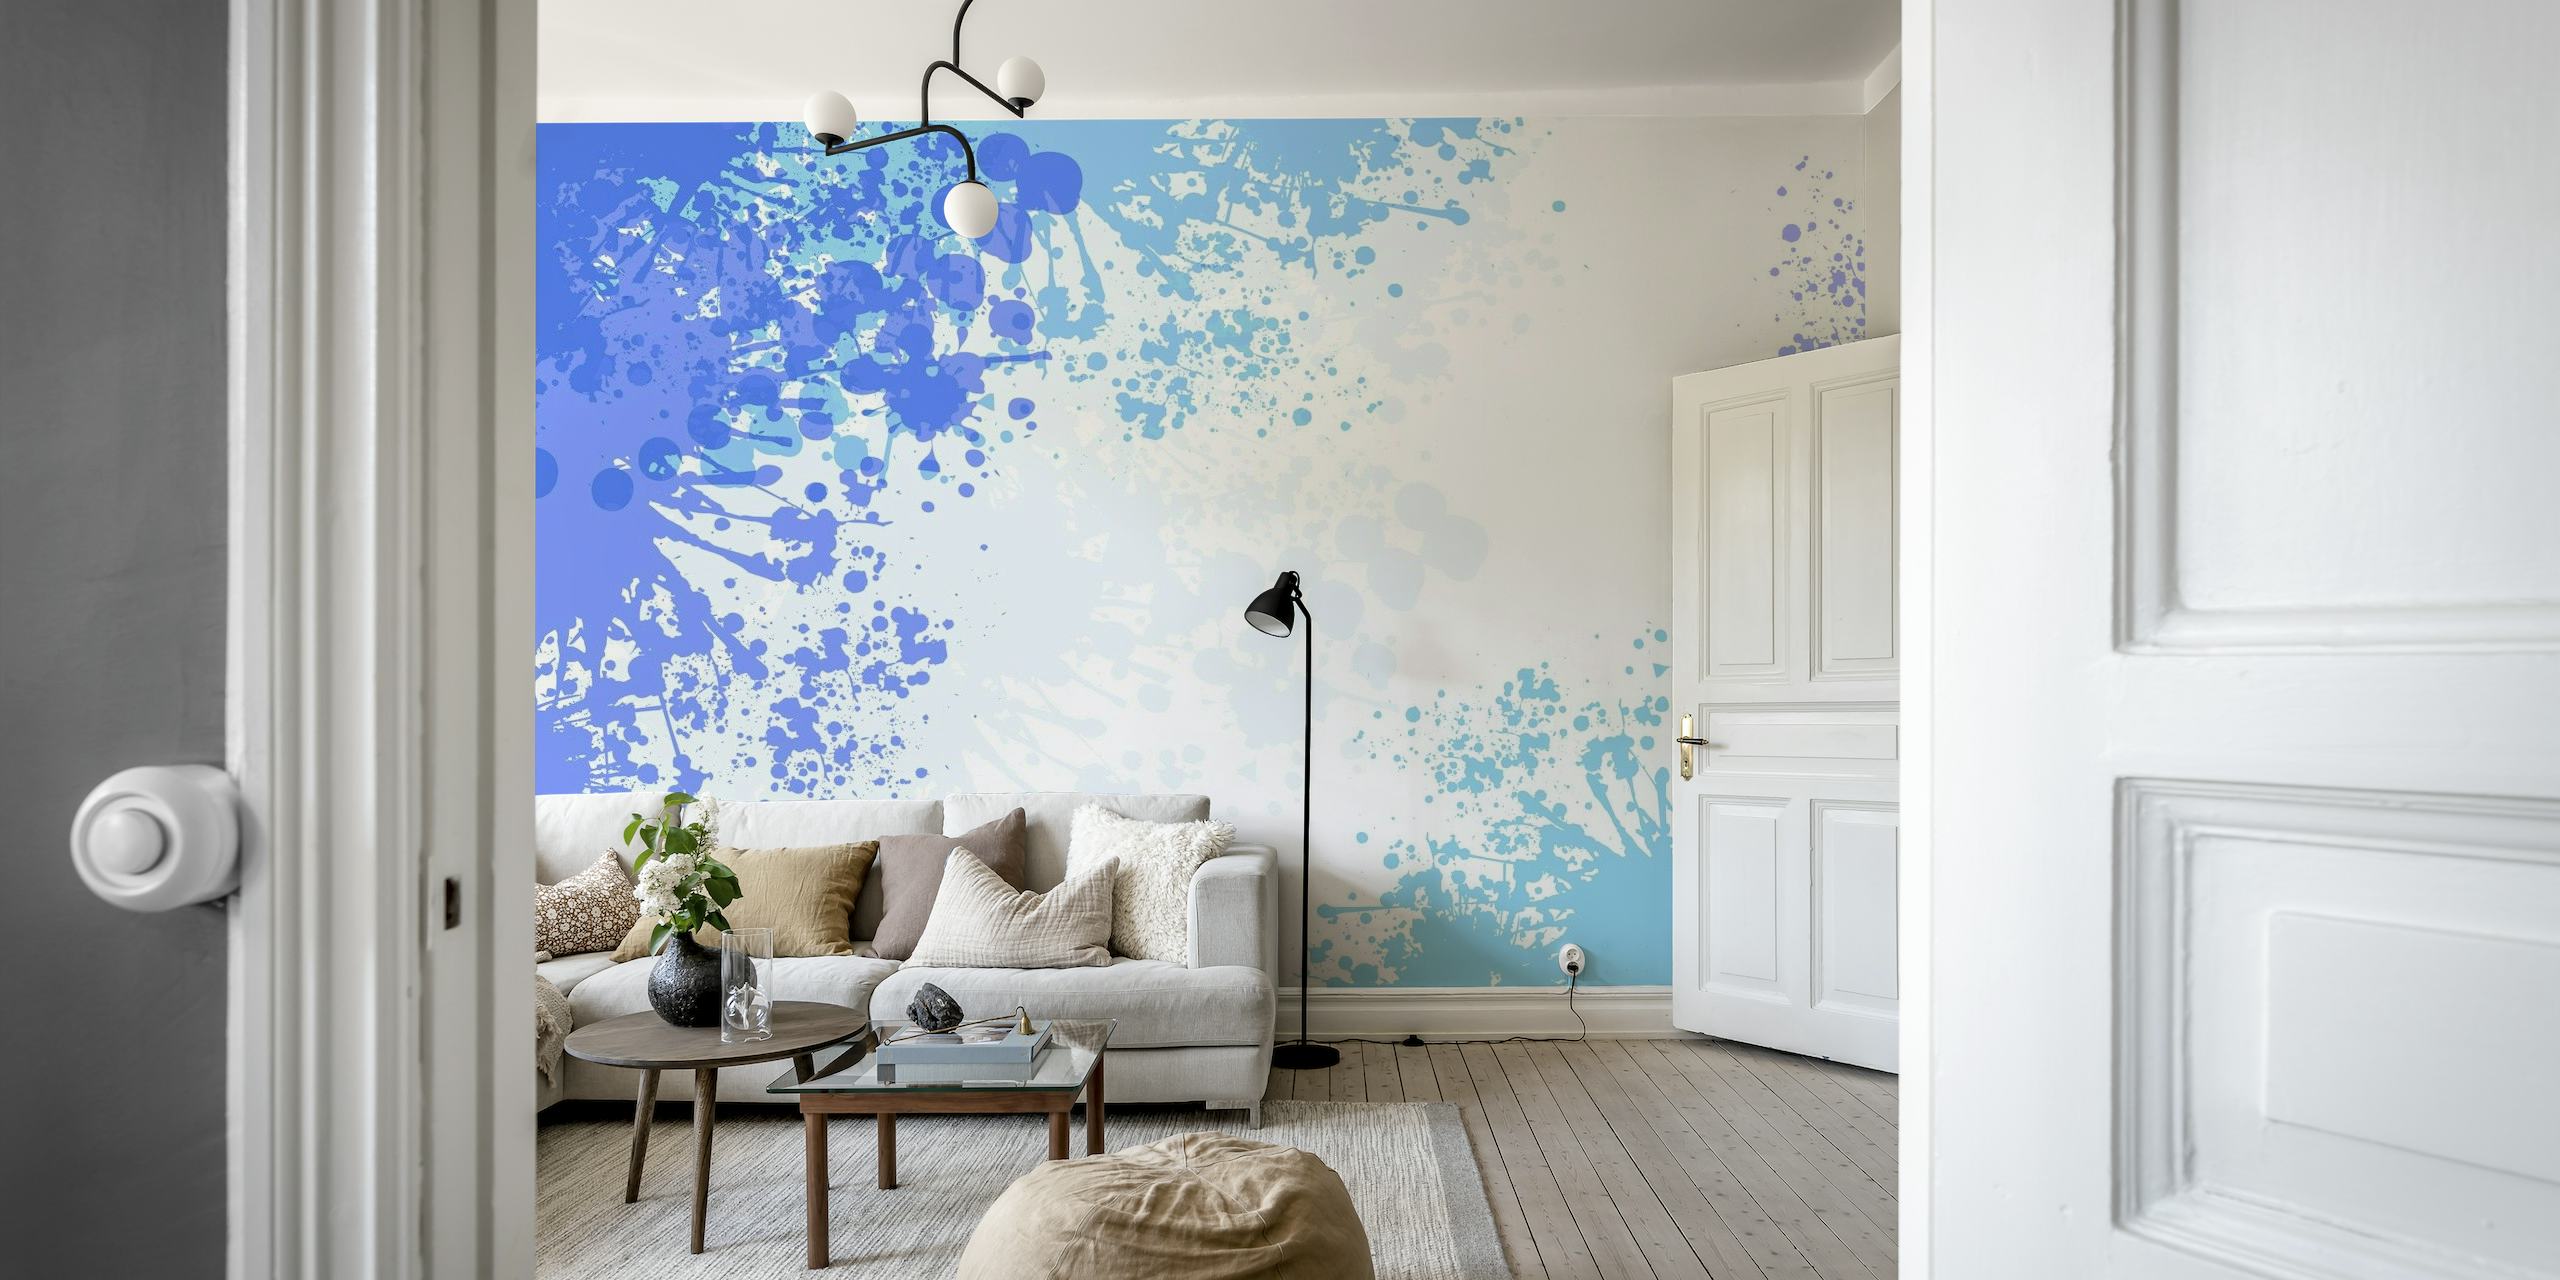 Fotomural vinílico de parede abstrato de arte em azul claro com uma mistura de gotas brancas e azuis mais profundas em uma parede.